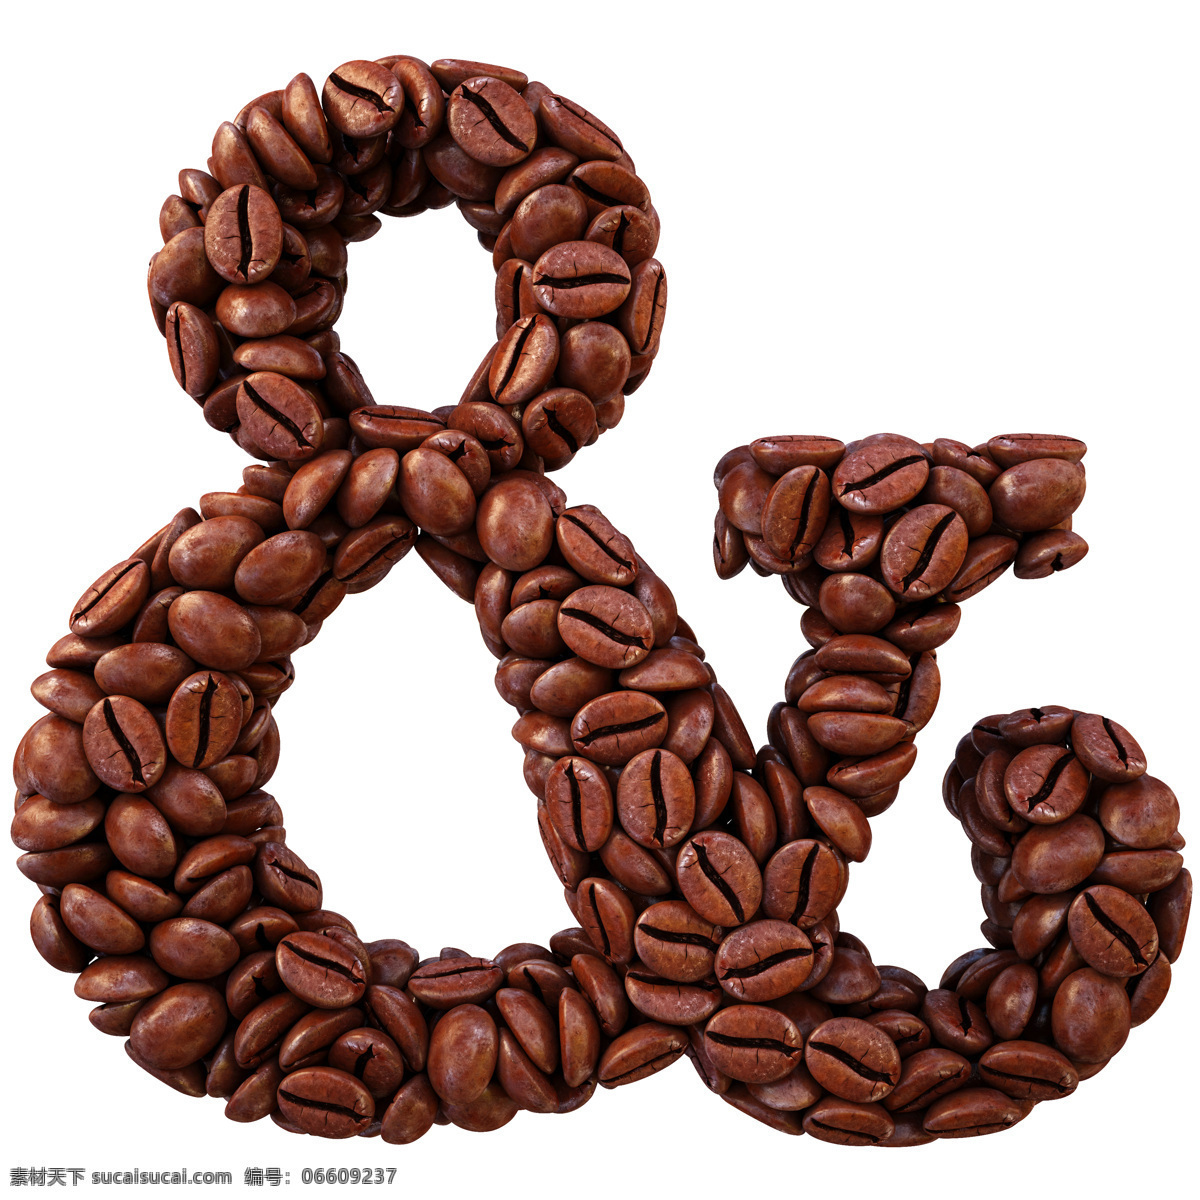 咖啡豆 组成 符号 amp 背景 书画文字 文化艺术